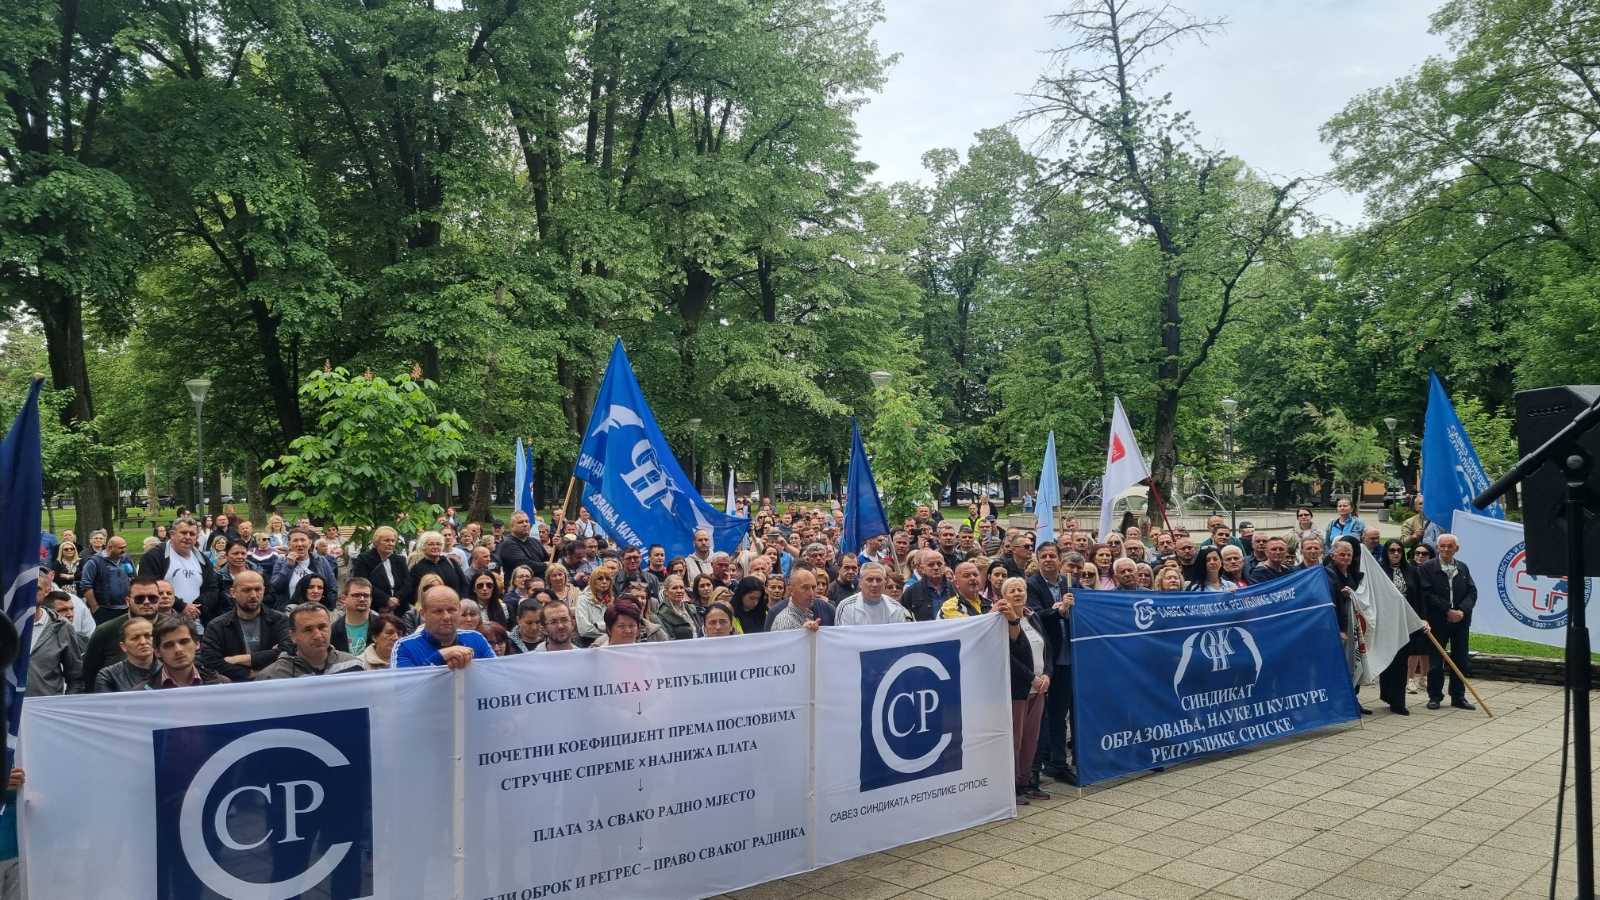 Prvomajski protest radnika u Banjaluci: "Zarađuju milione na grbači radnika"